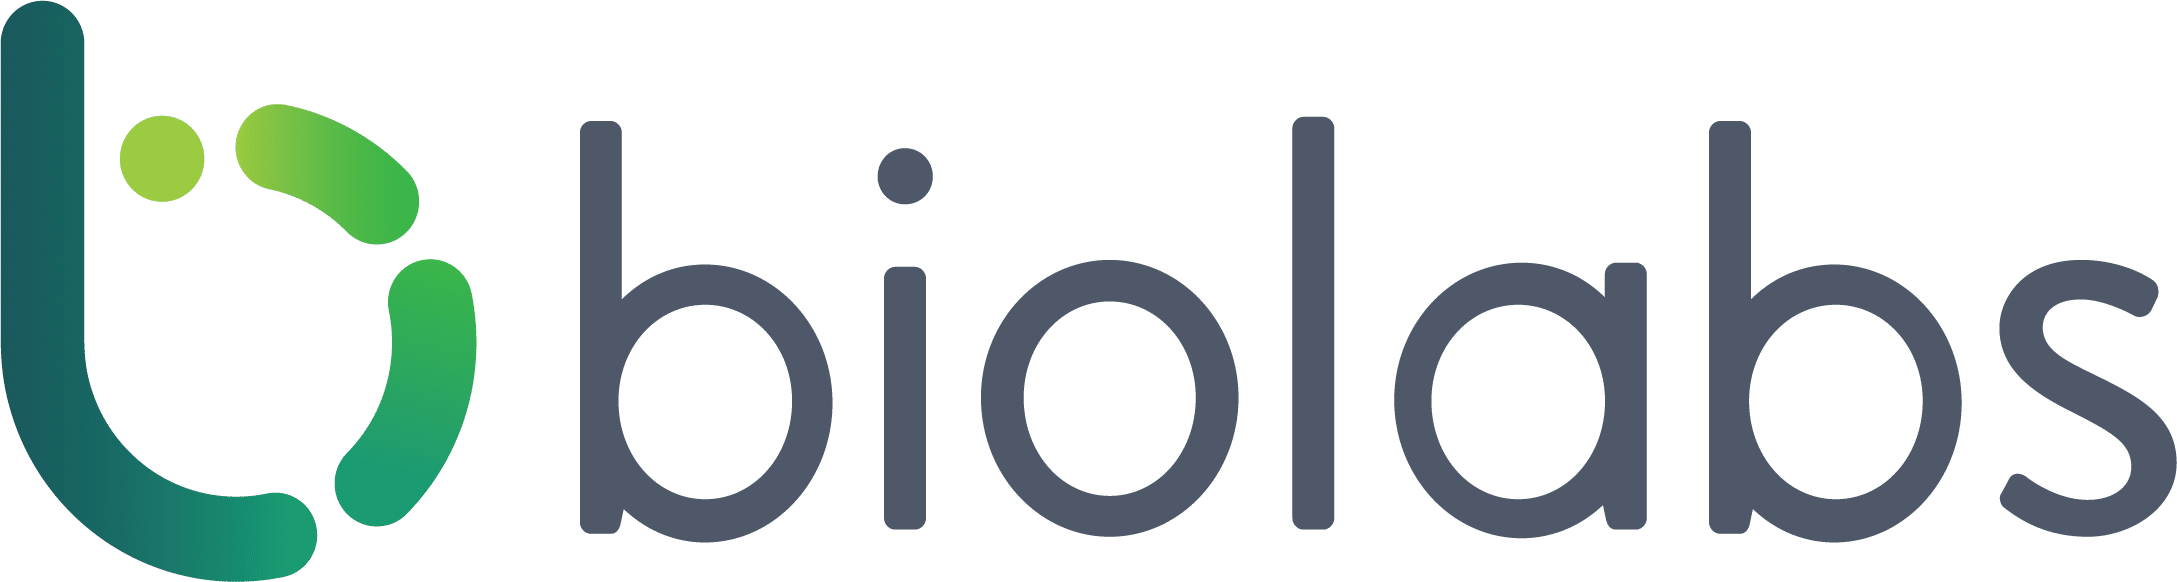 logo biolabs